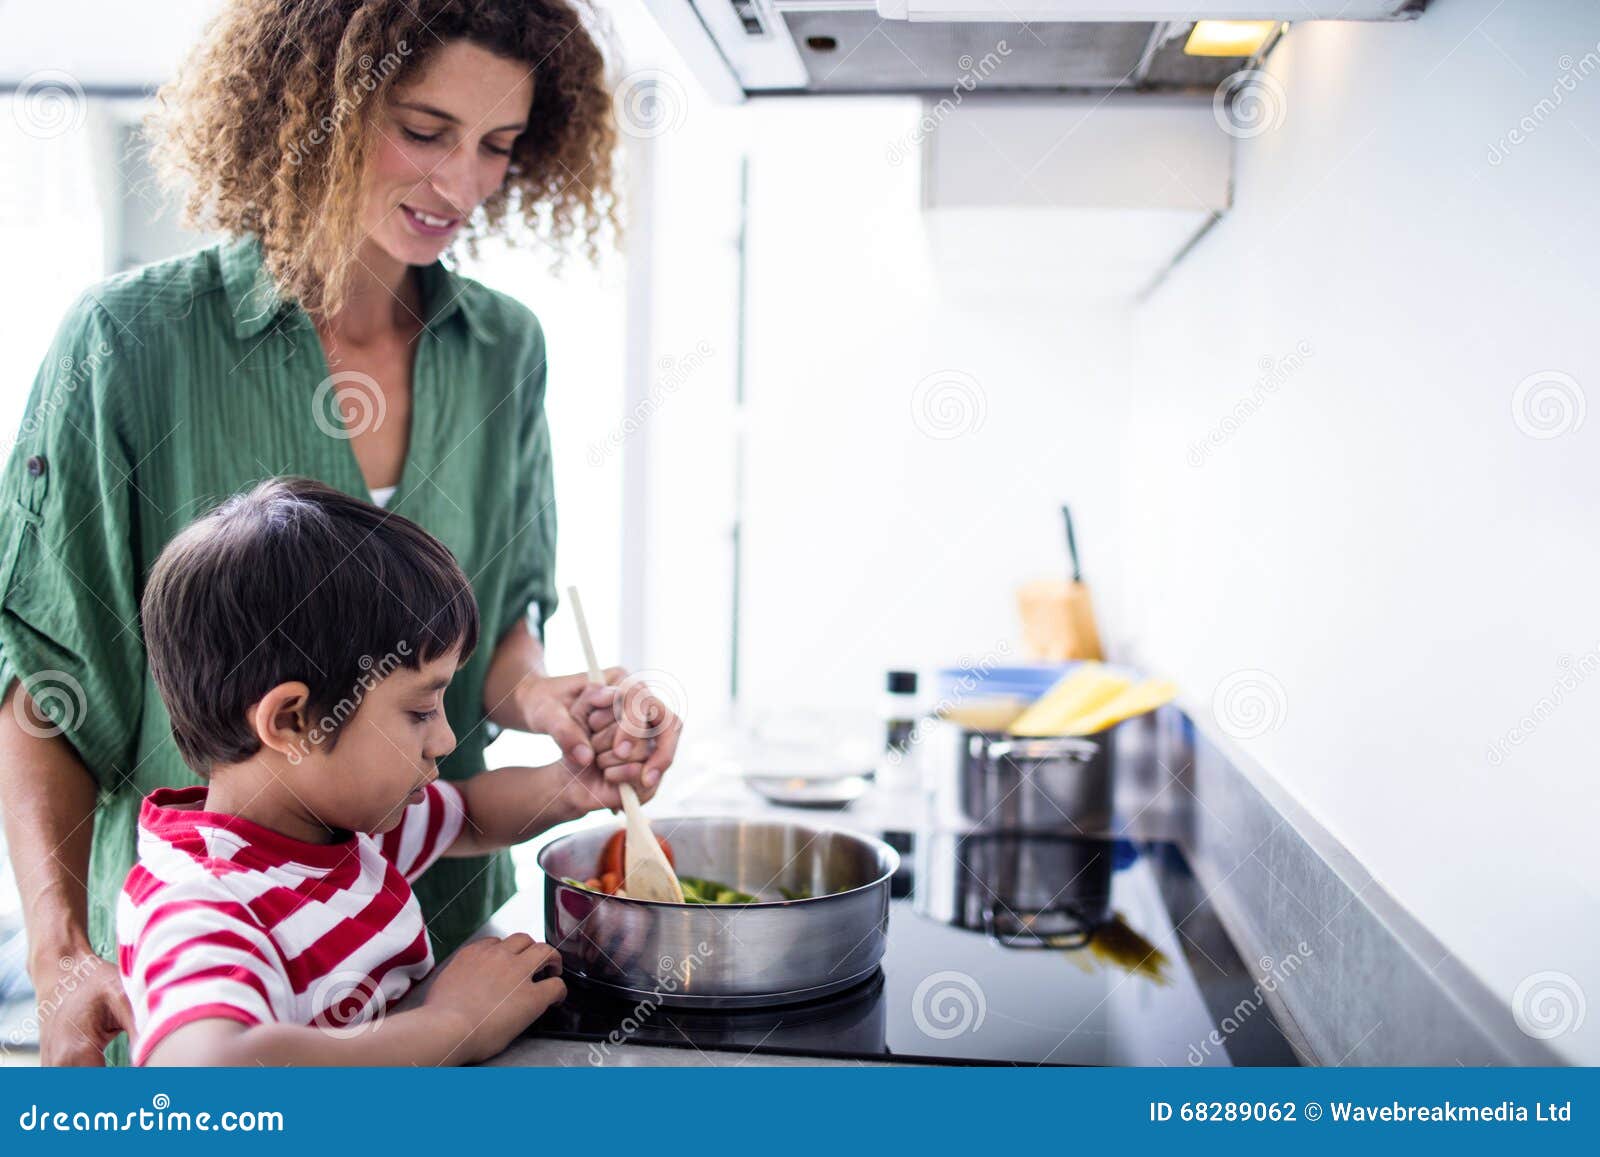 Сообщение на кухне мама. Семья на кухне. Счастливая семья на кухне. Мама с ребенком на кухне. Мать и сын готовят.